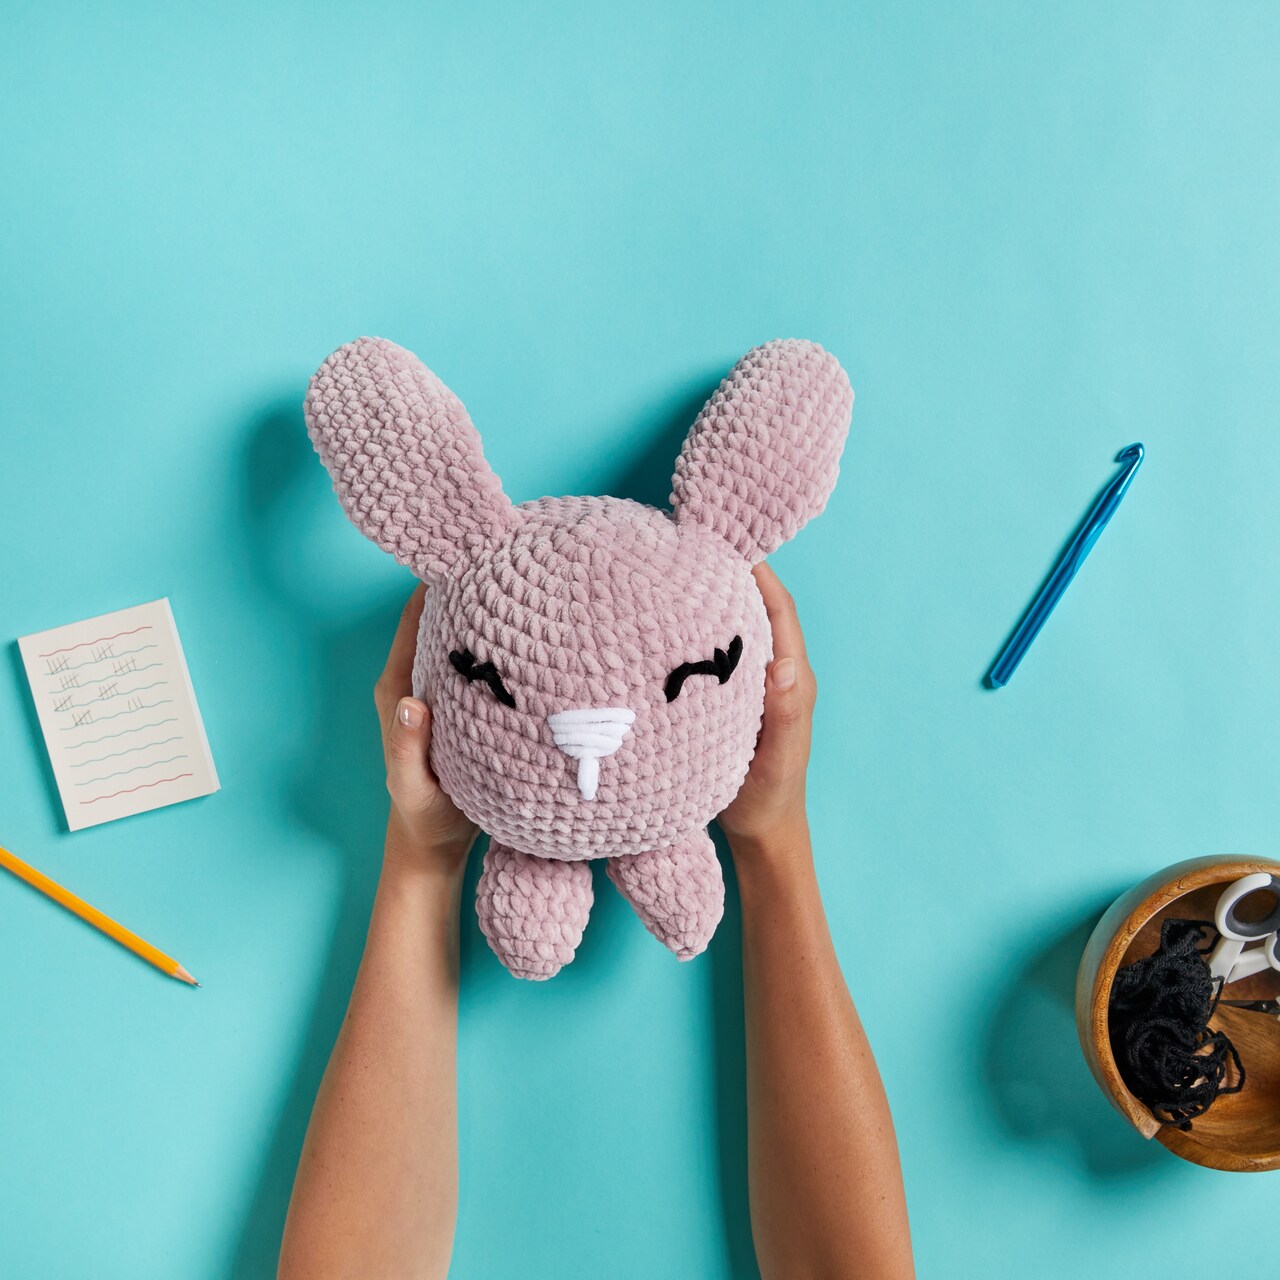 Crochet Amigurumi Little Bunny with Loops & Threads